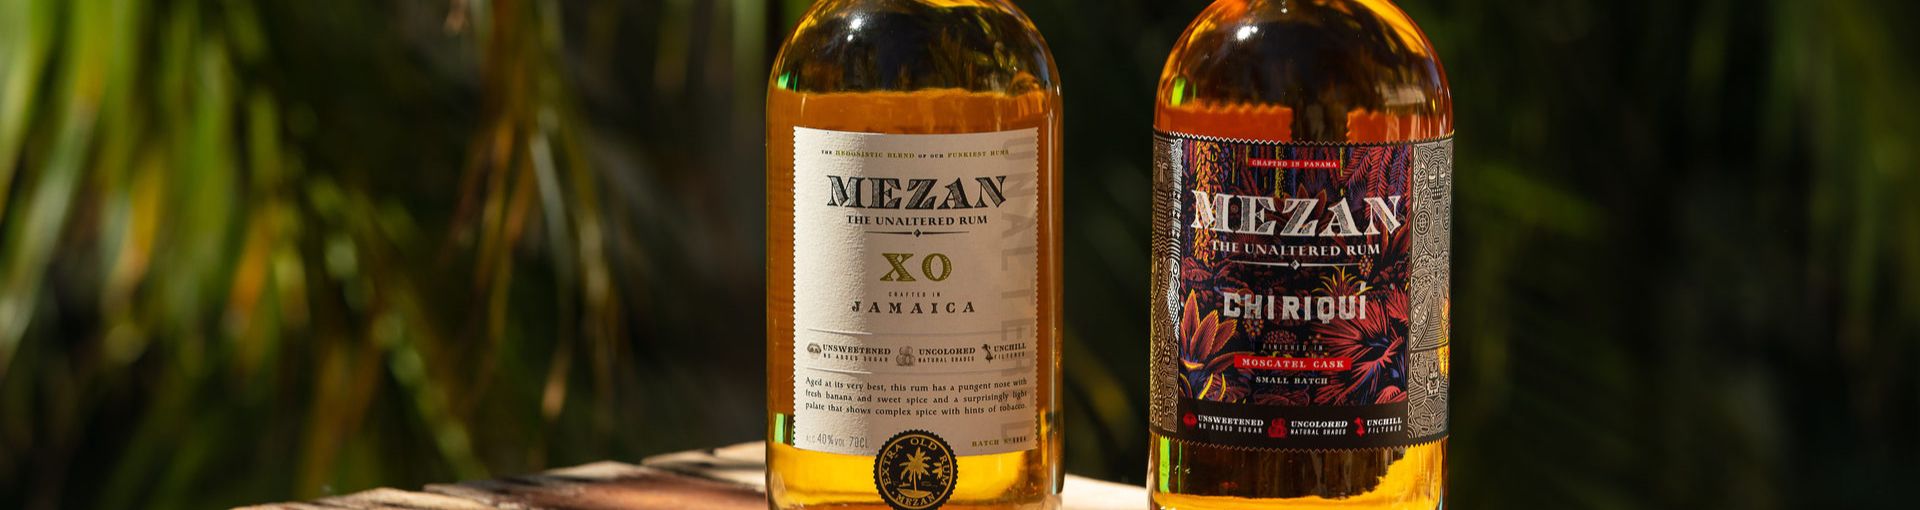 2 Flaschen Mezan Rum auf einer Holzkiste mit tropischem Hintergrund